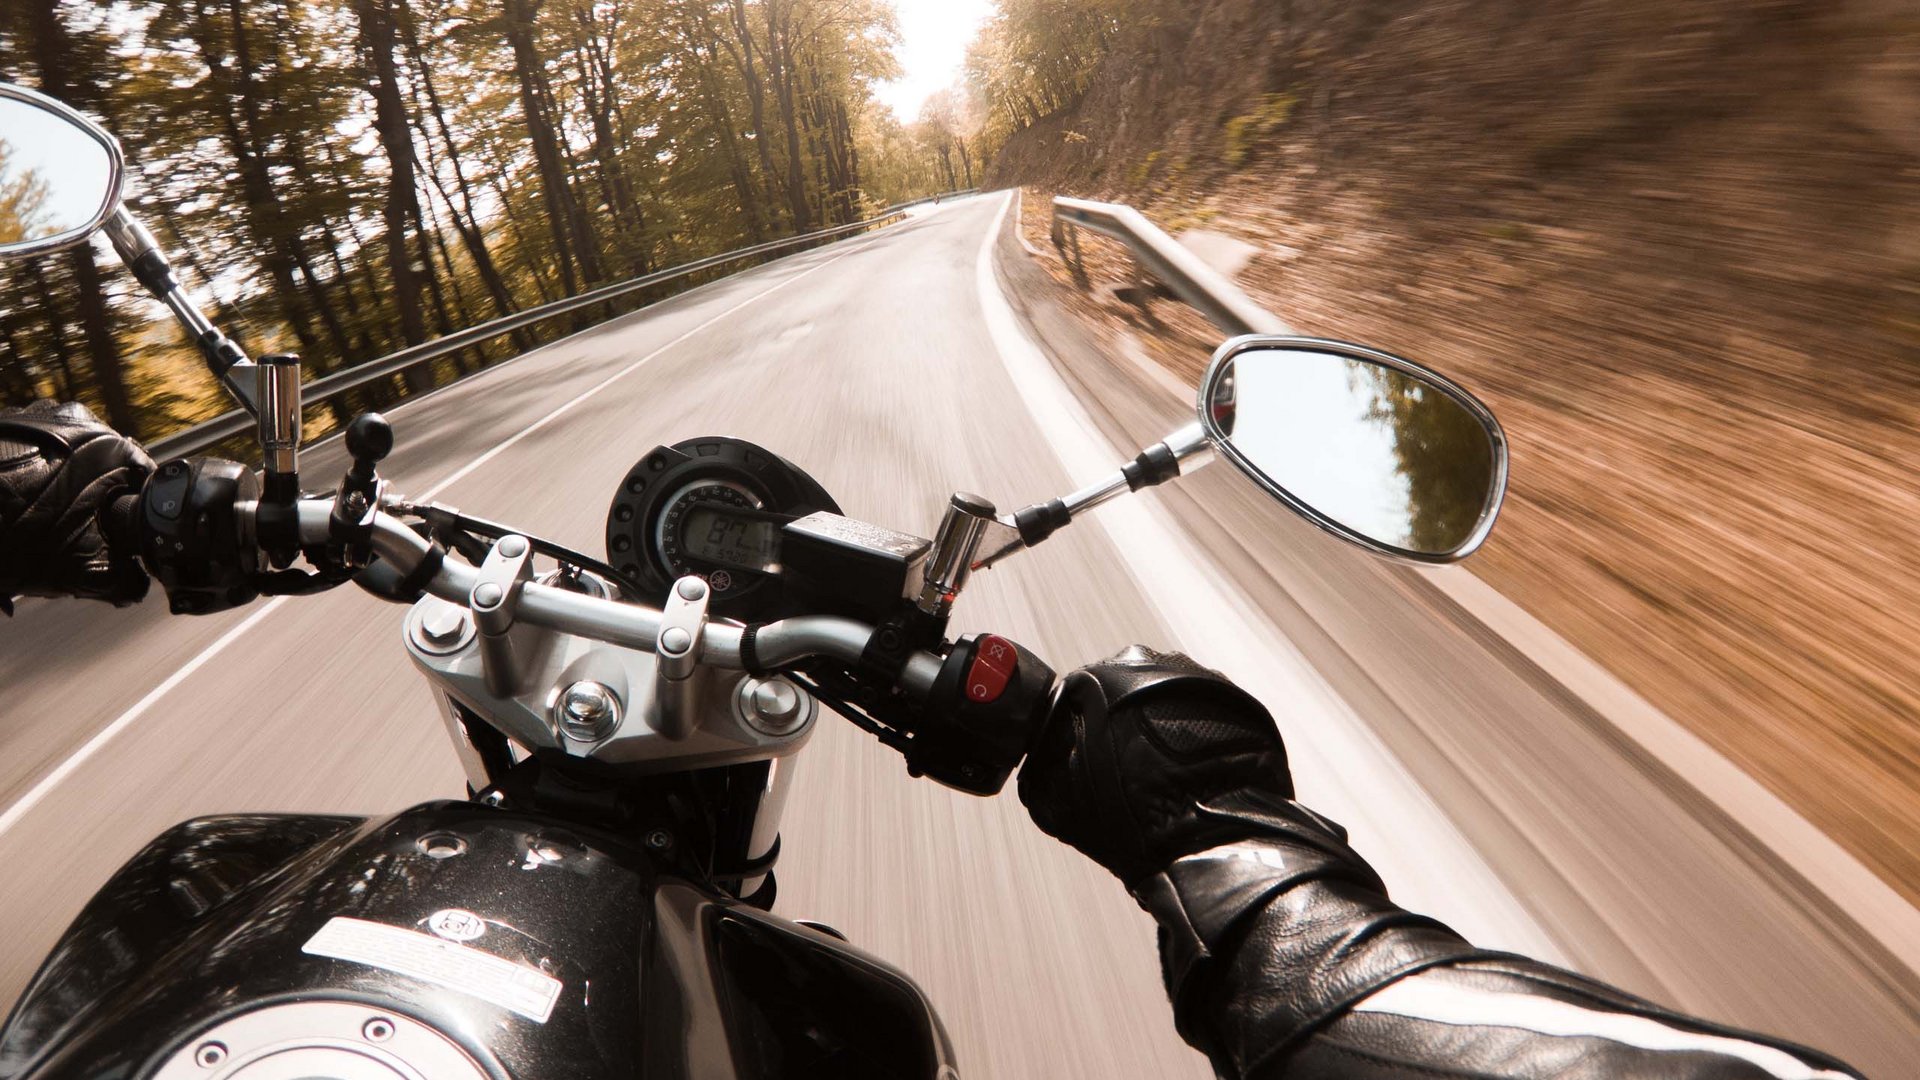 Motorcycle + hotel + Dolomites = ♥